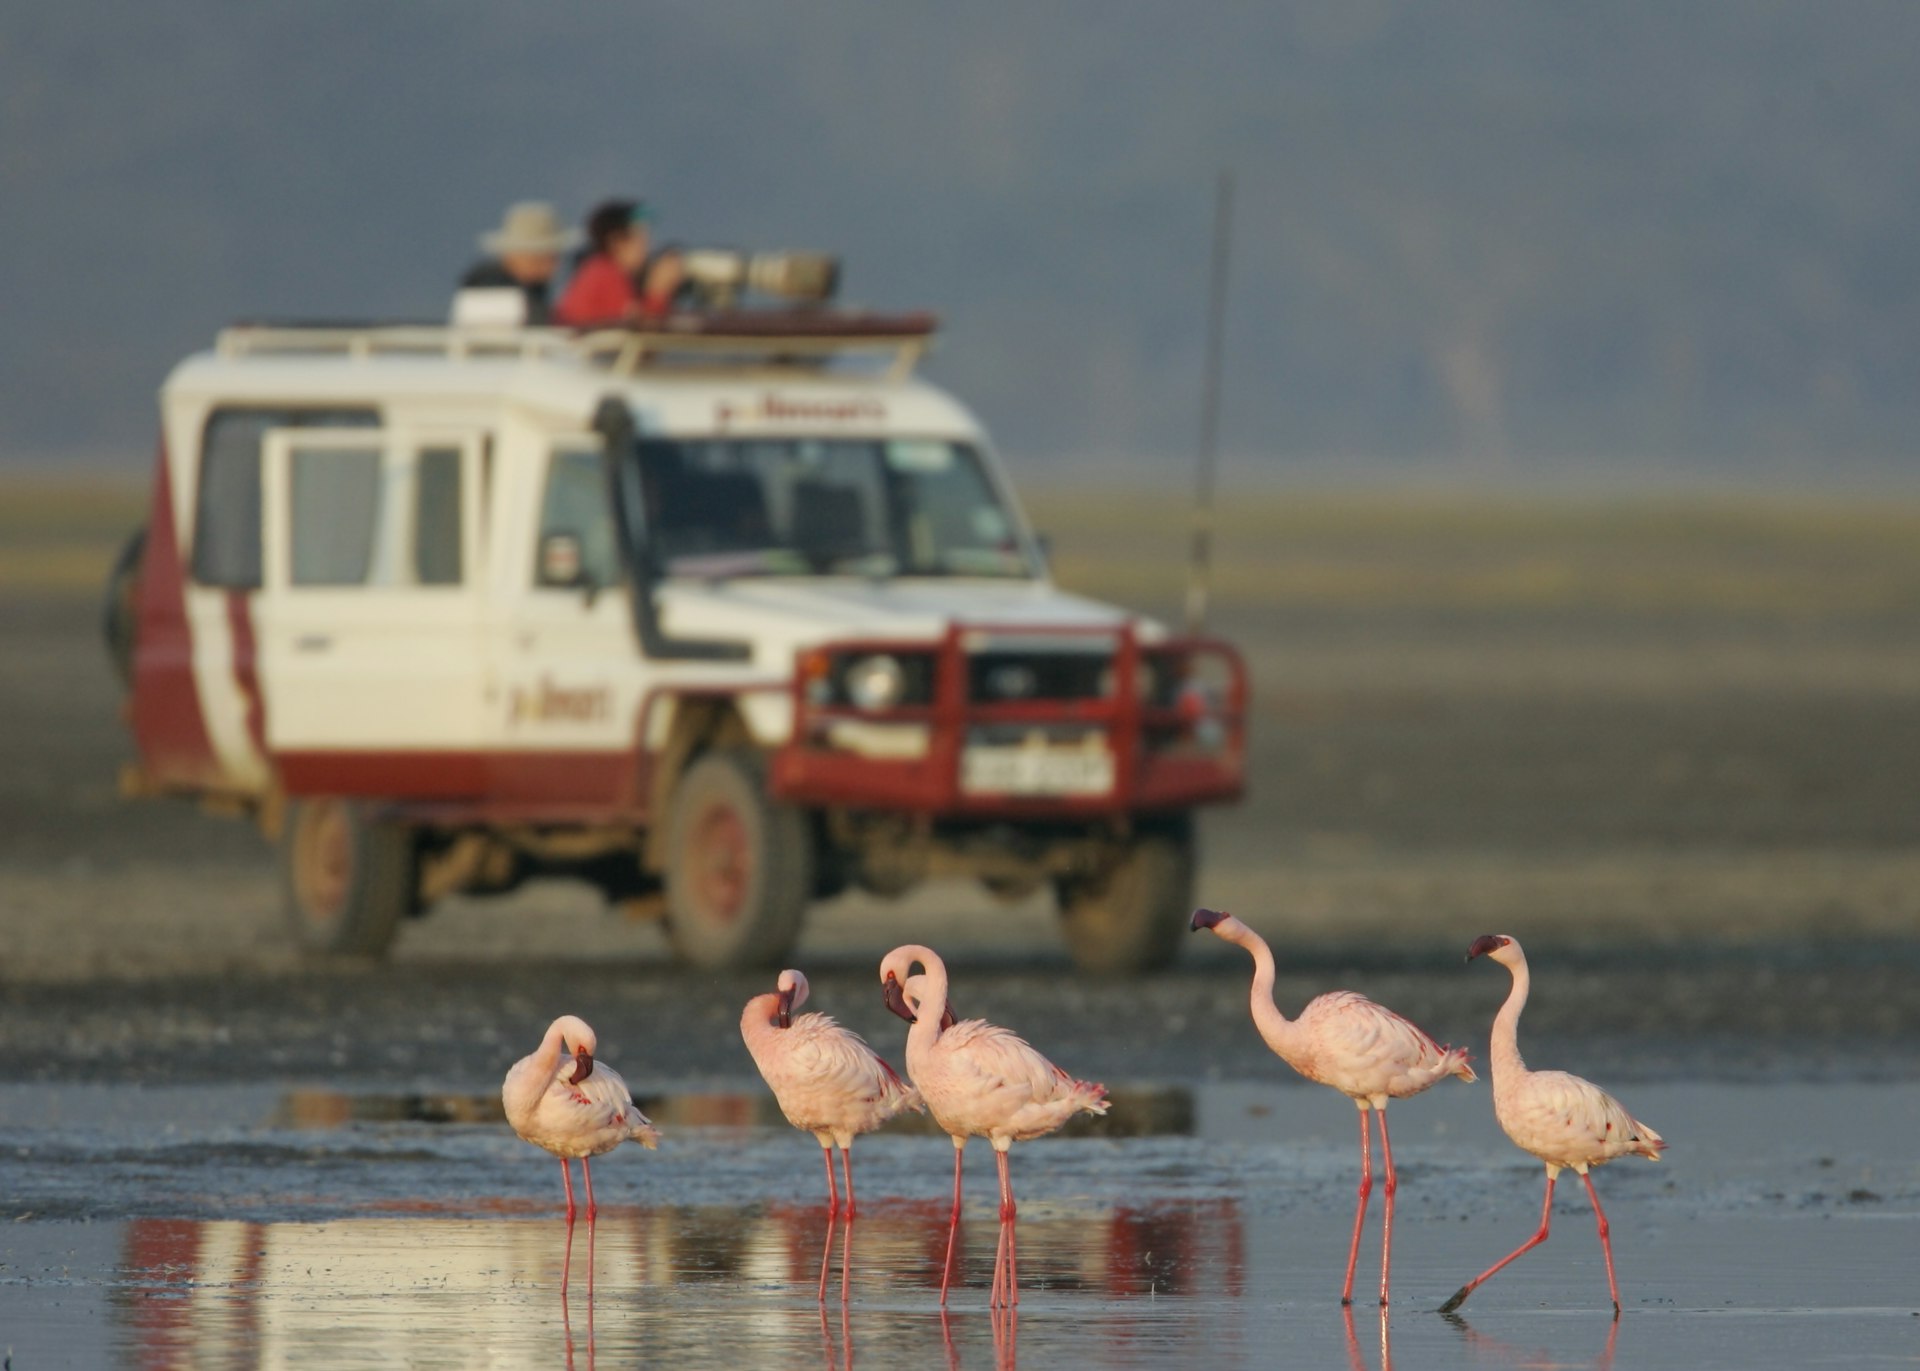 Flamingo Watching from a Safari Vehicle at Lake Nakuru National Park, Kenya